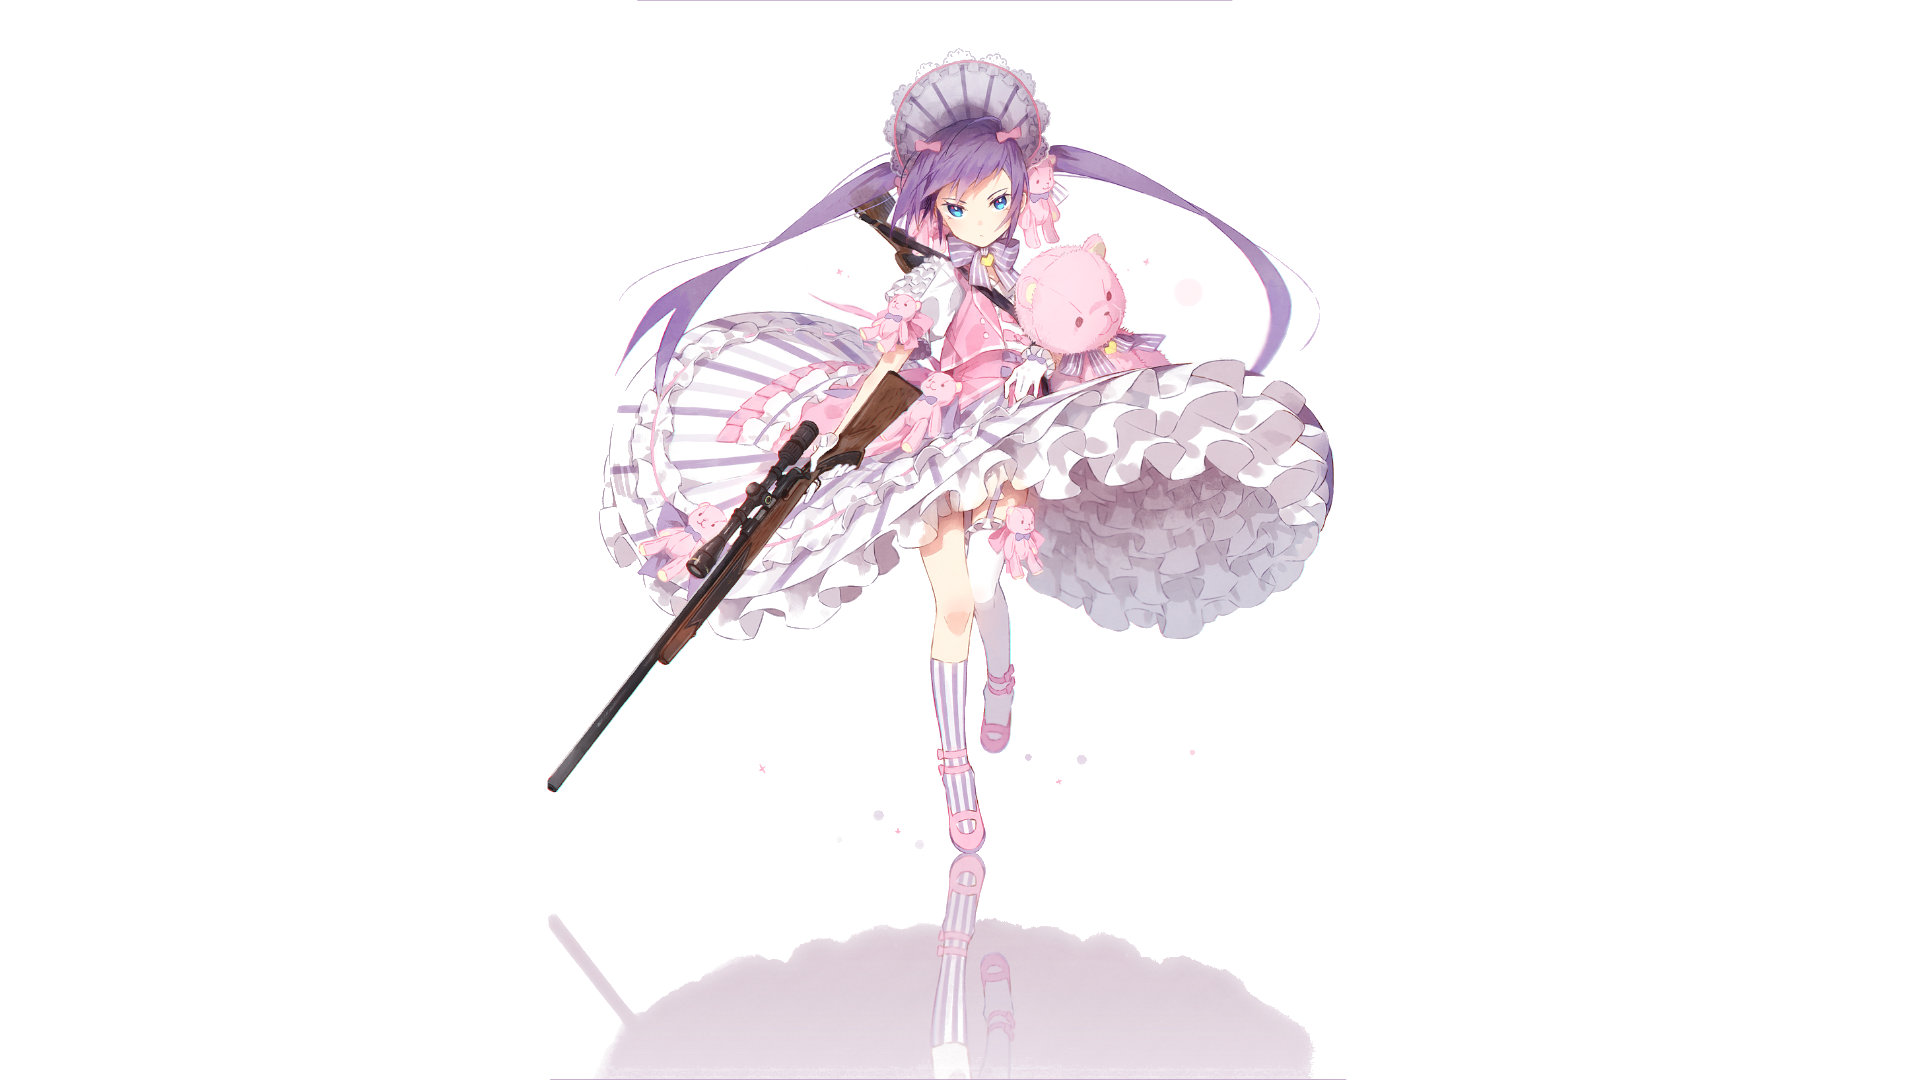 Anime 1920x1080 gun twintails pink dress teddy bears hair bows purple hair blue eyes shotgun